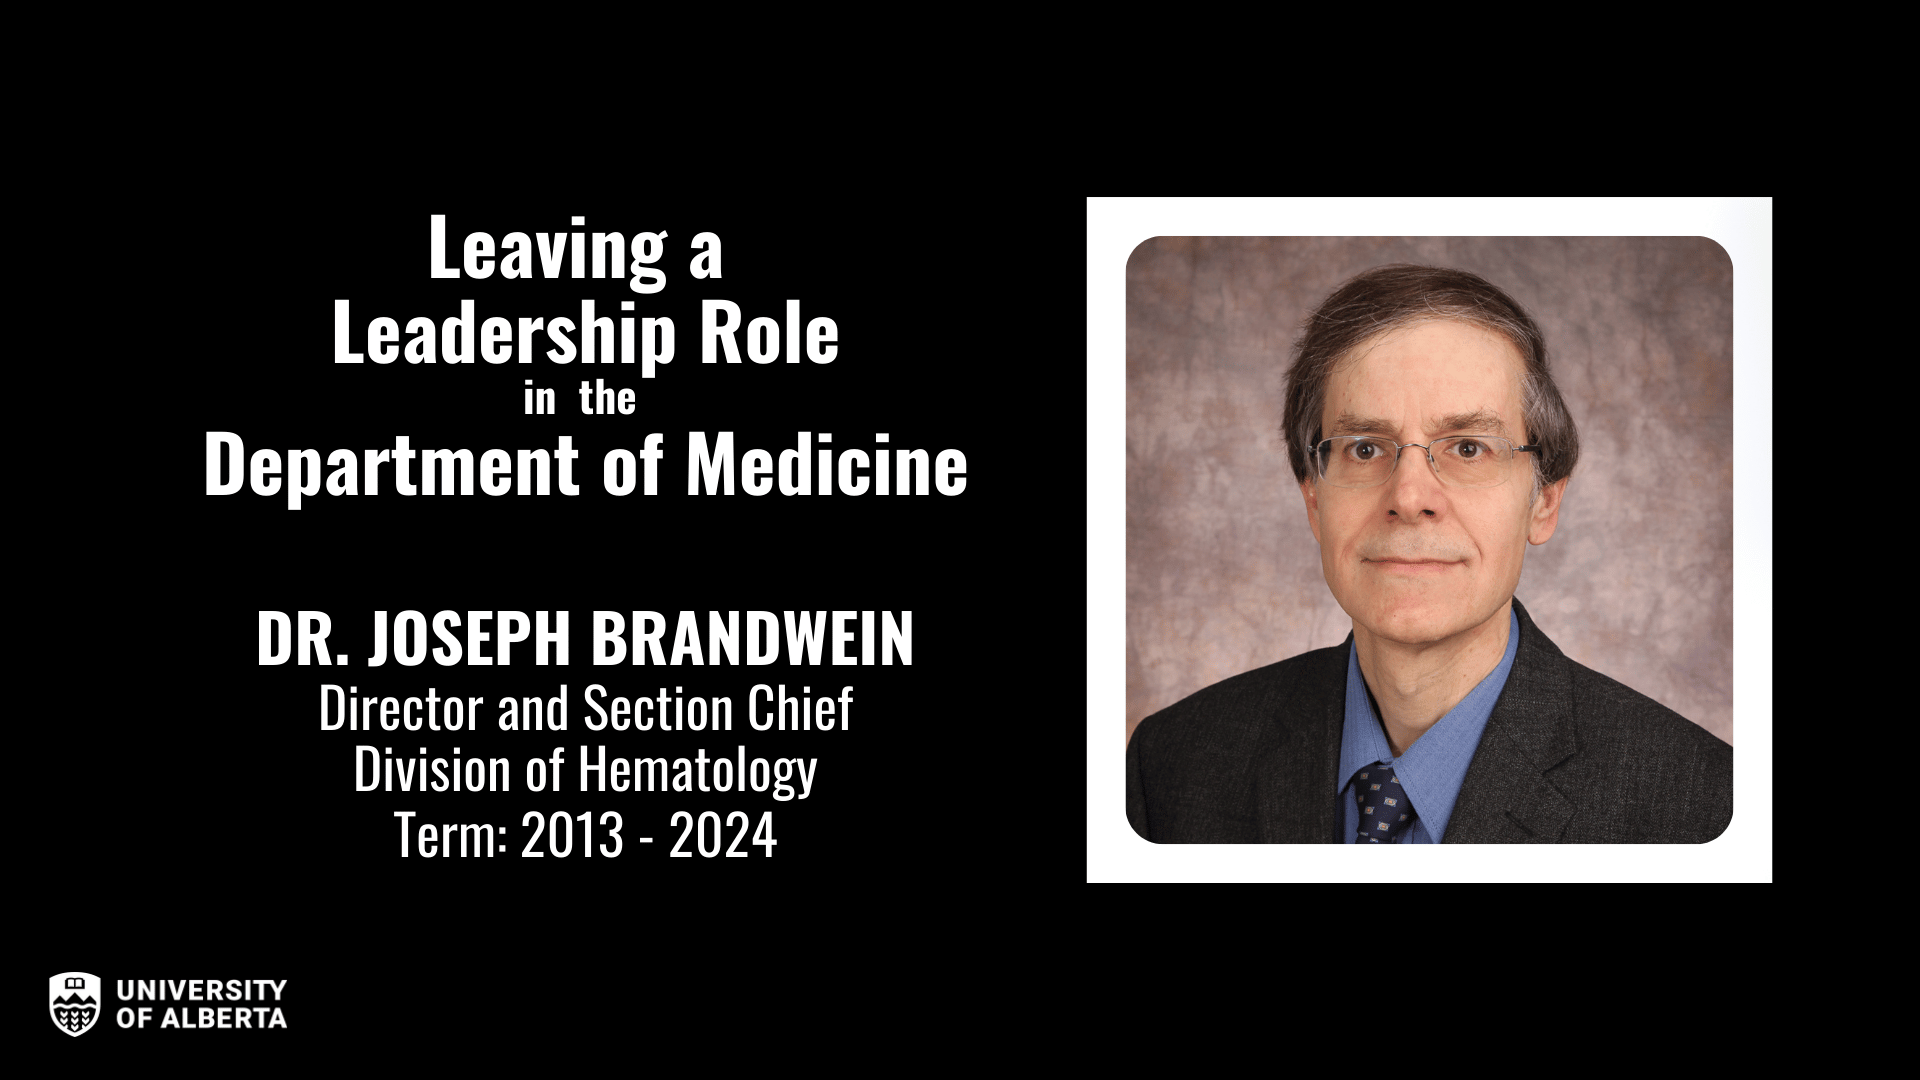 Portrait of Dr. Joseph Brandwein